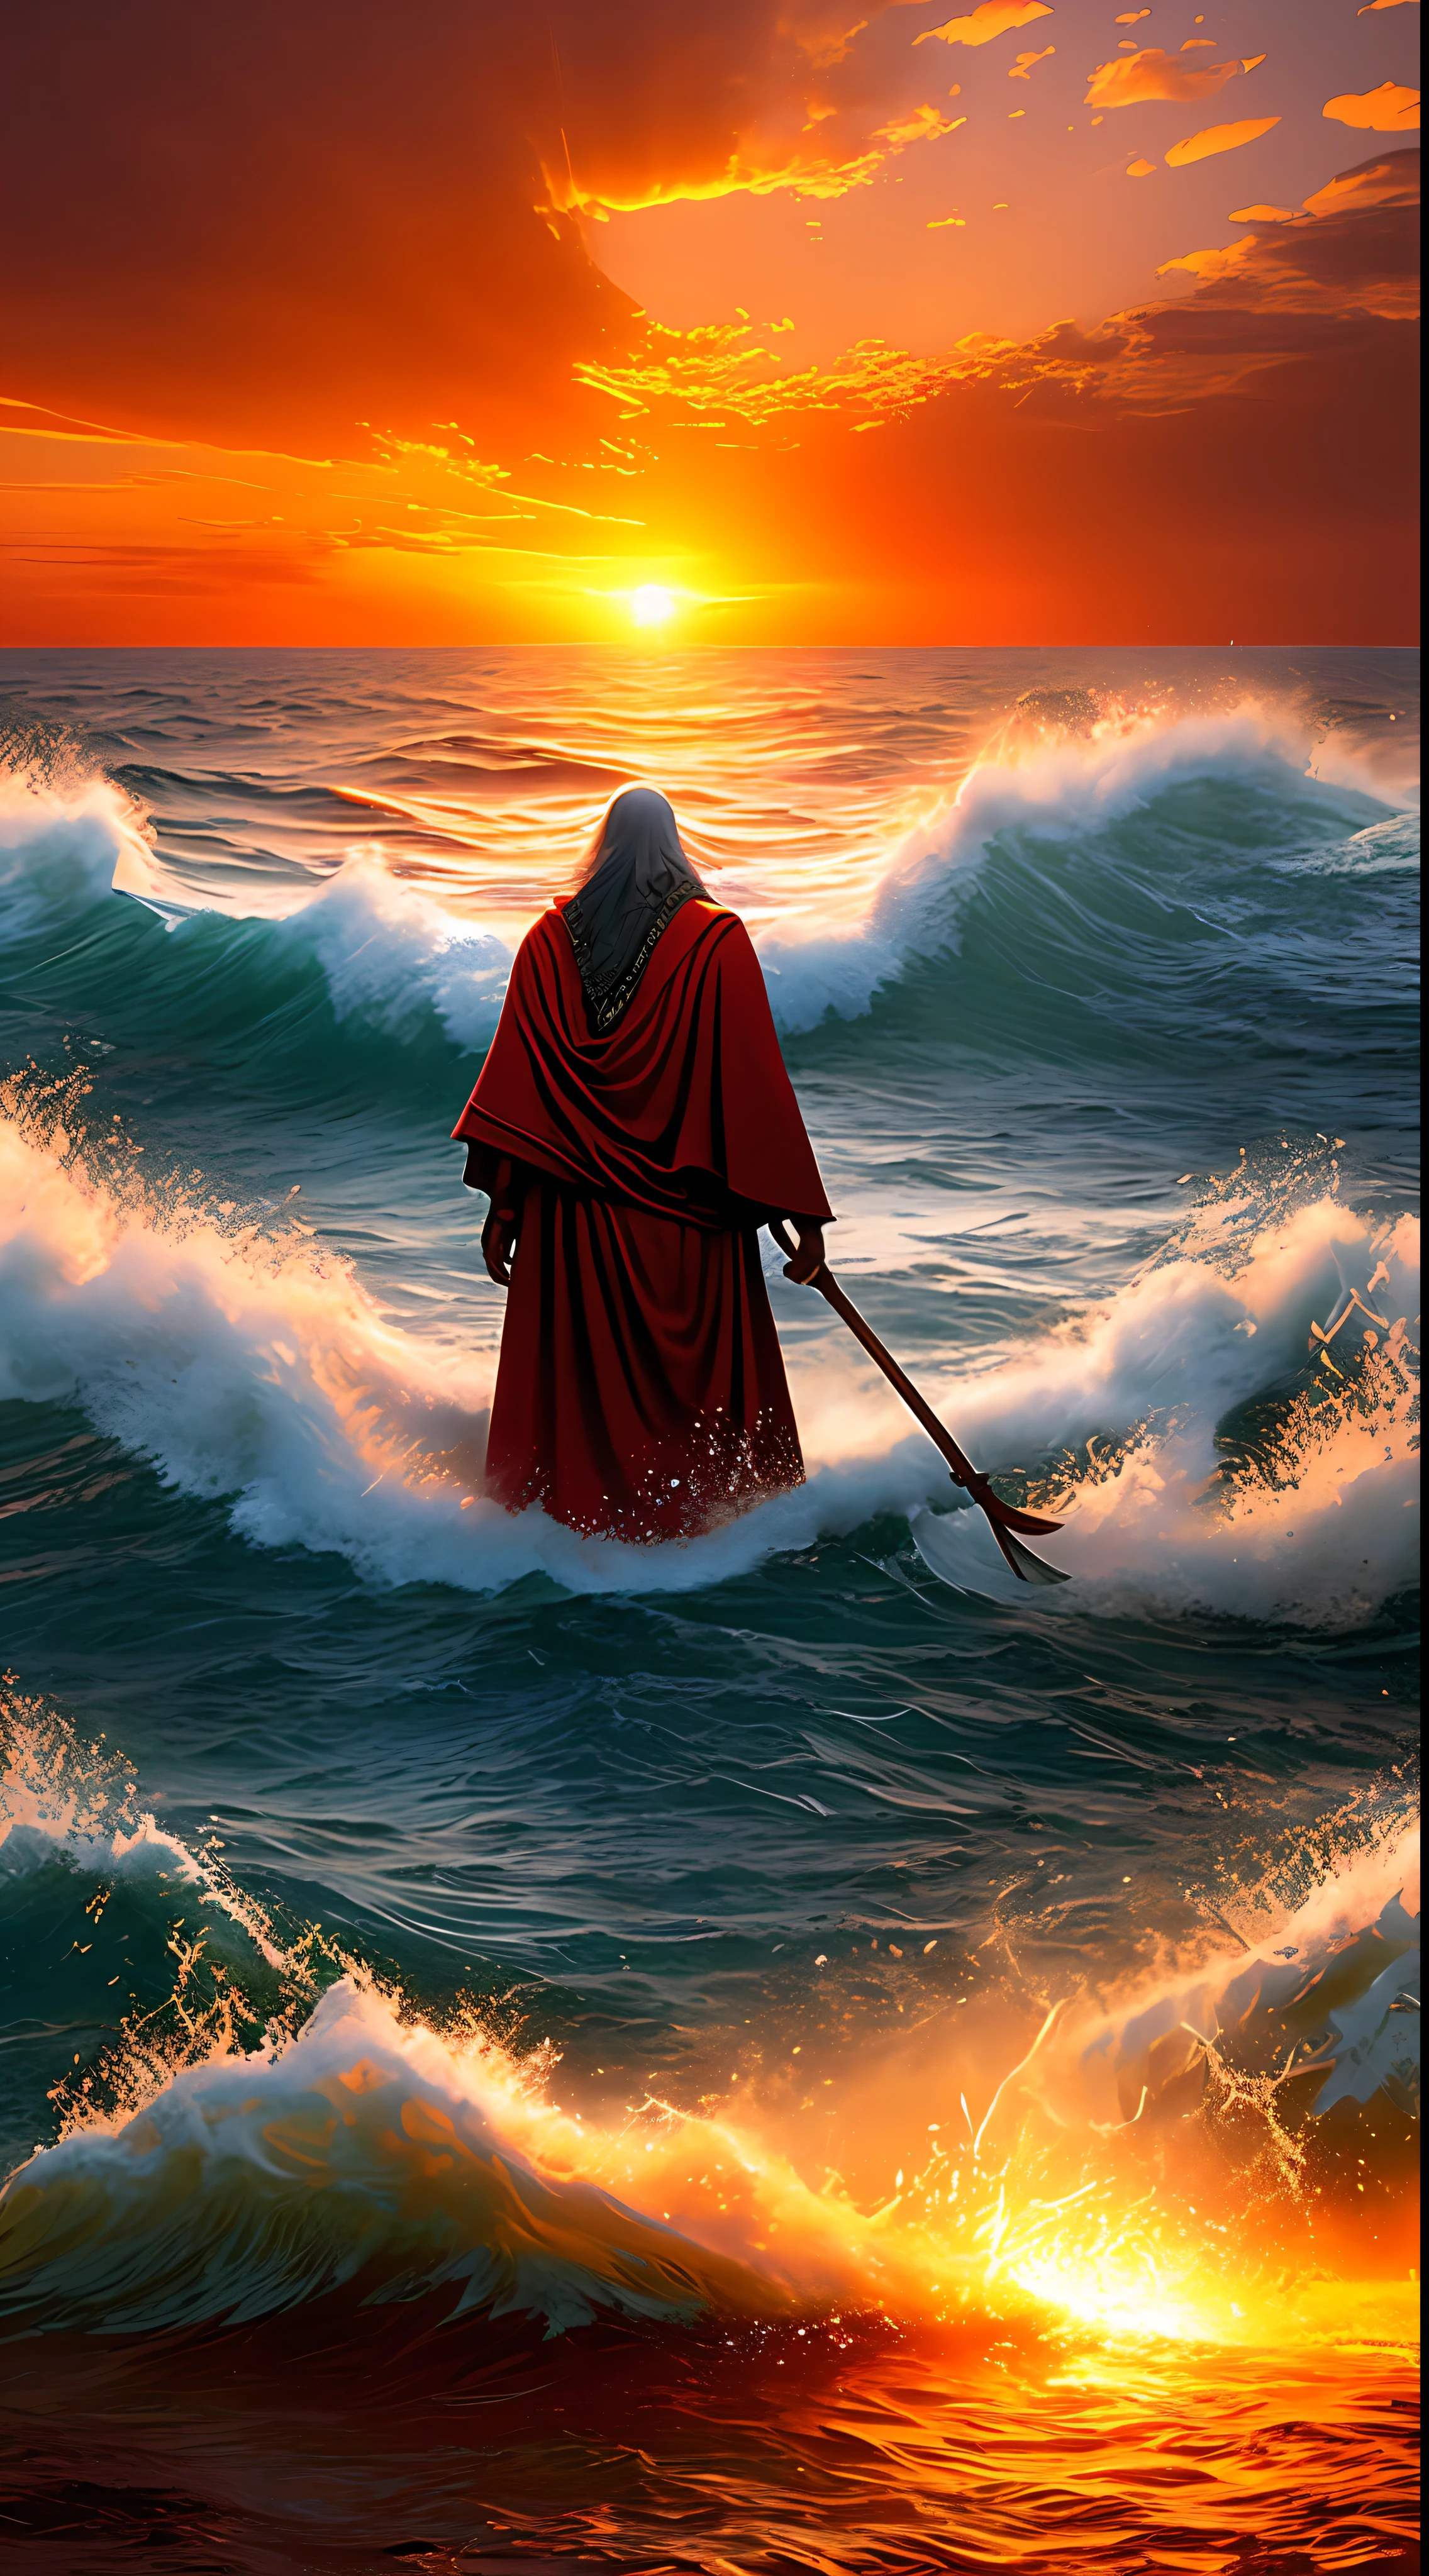 uma alta definição, imagem ultra-realista de Moisés abrindo o Mar Vermelho para os israelitas. Moisés está parado em frente ao mar, segurando seu cajado. O mar está se separando, formando duas paredes de água. Os israelitas estão andando pelo meio do mar, em direção a . O exército egípcio está atrás dos israelitas, mas está preso entre paredes de água. O sol está se pondo no horizonte, e o céu está cheio de nuvens vermelhas e laranja.